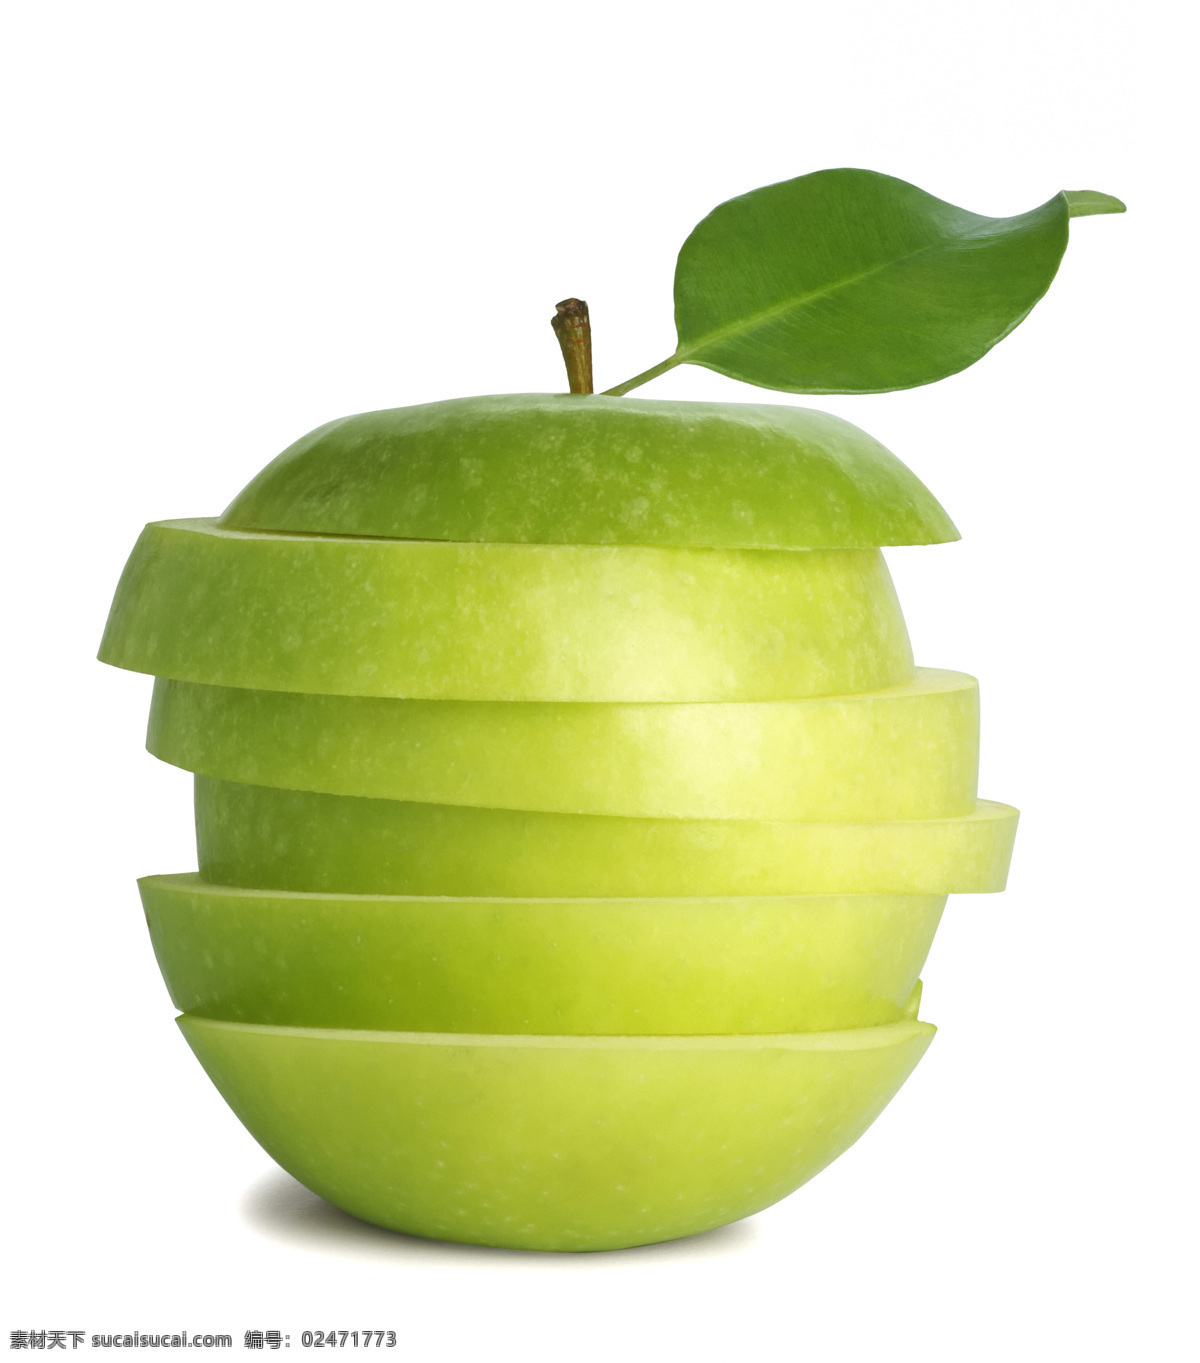 切开的青苹果 苹果 青苹果 切开的苹果 水果 绿色苹果 食品水果蔬菜 生物世界